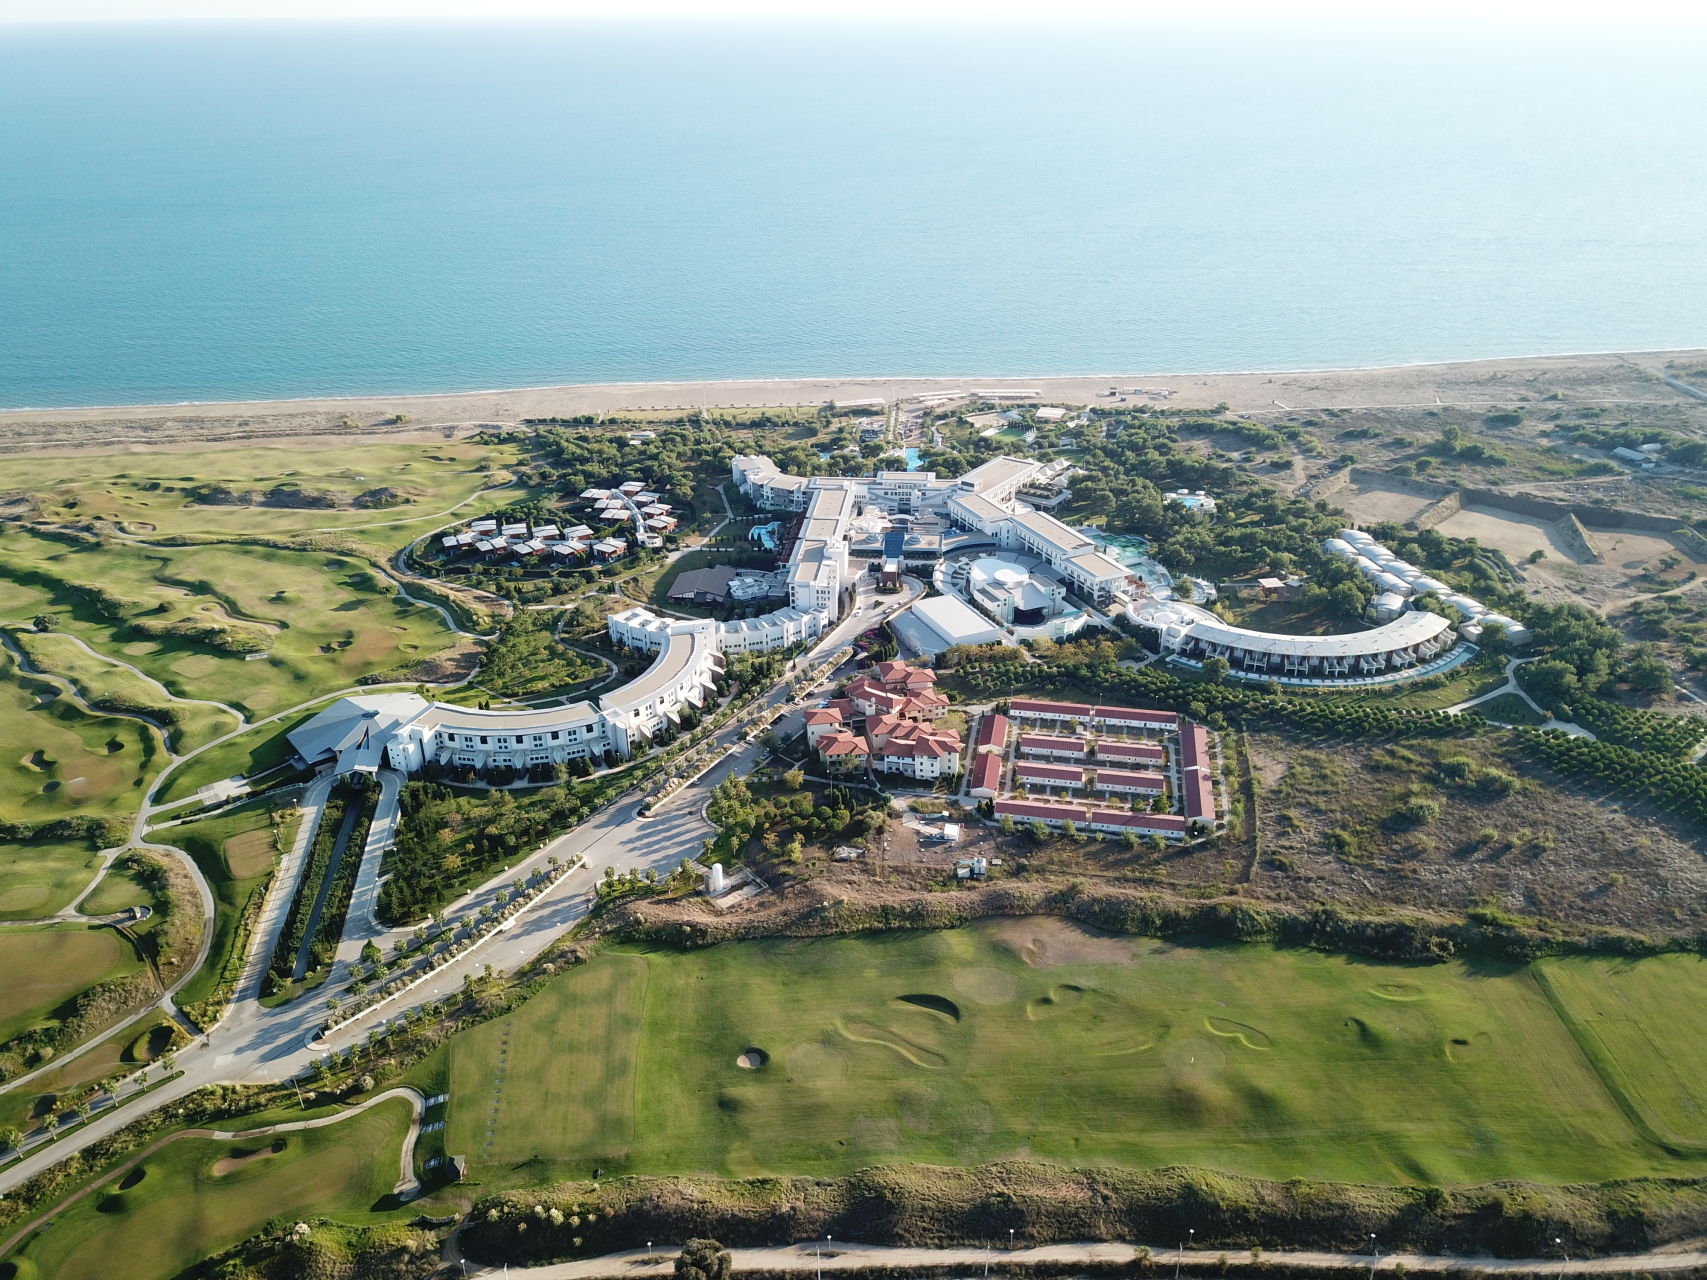 Lykia world links golf hotel antalya